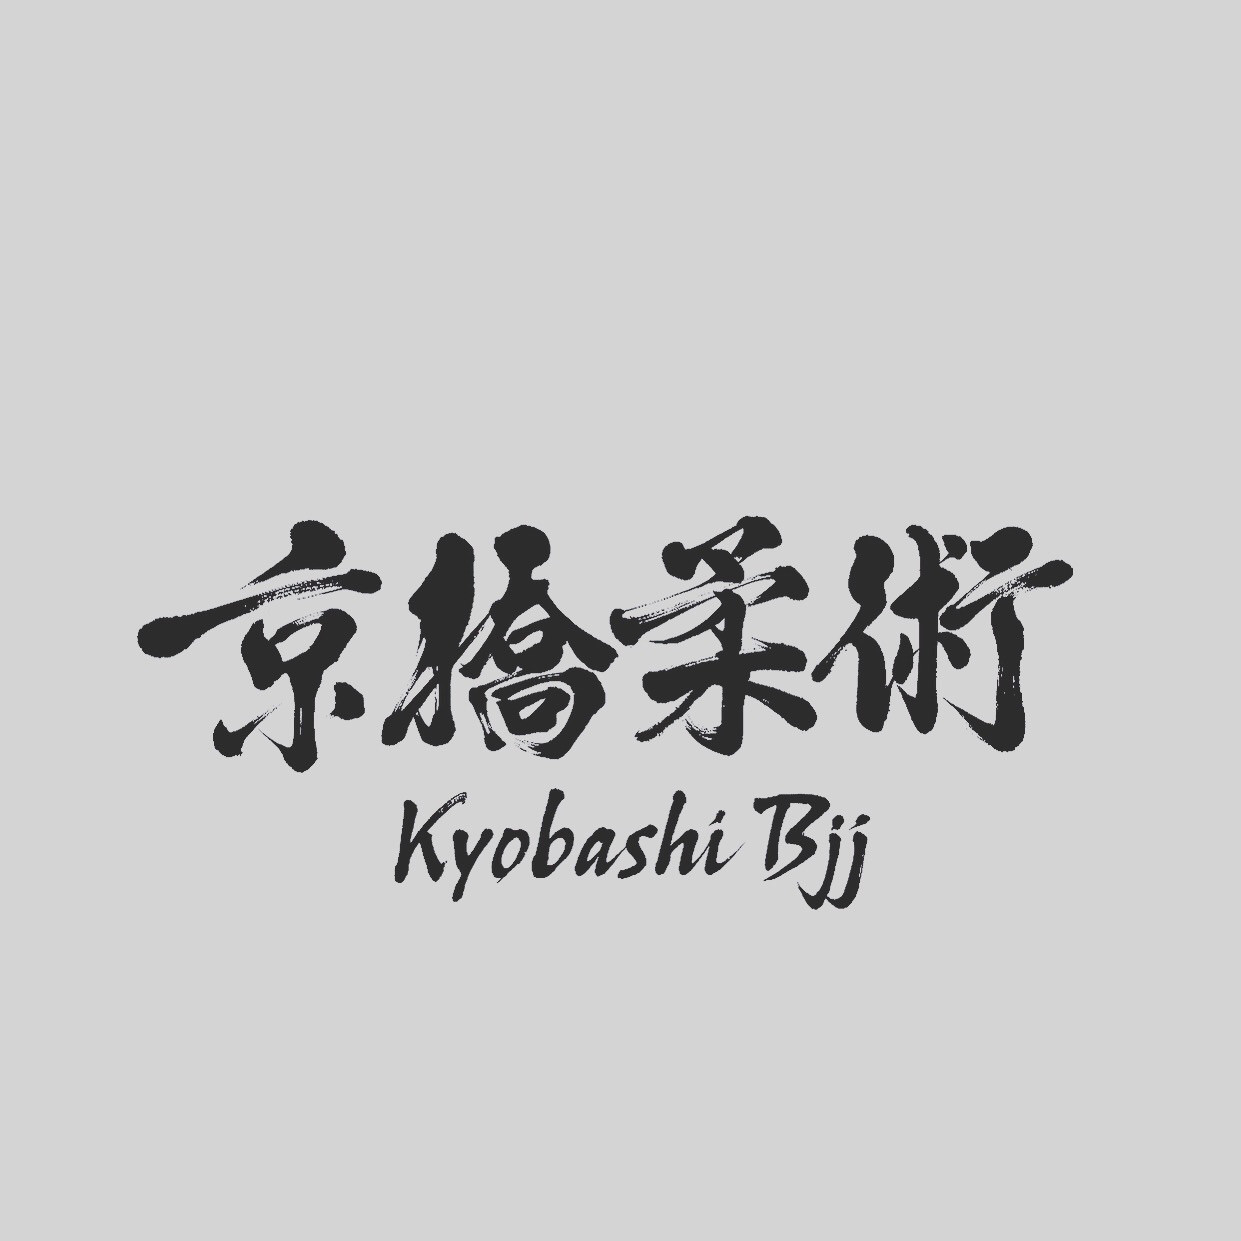 Kyobashi BJJ